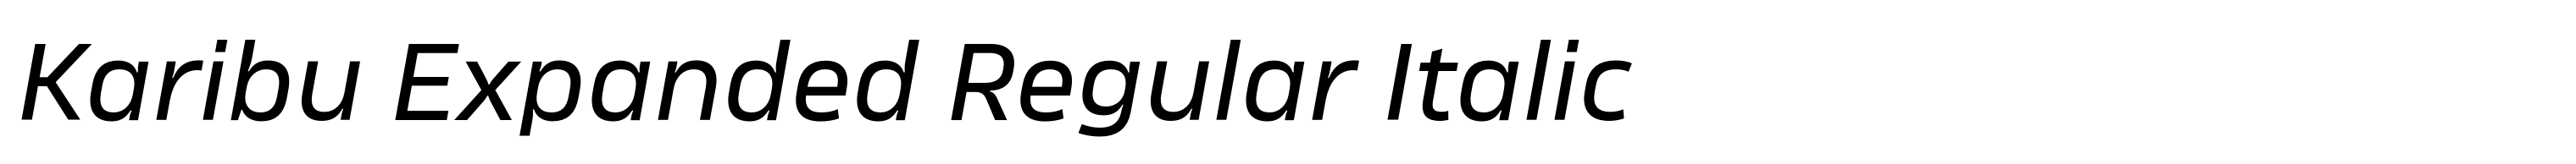 Karibu Expanded Regular Italic